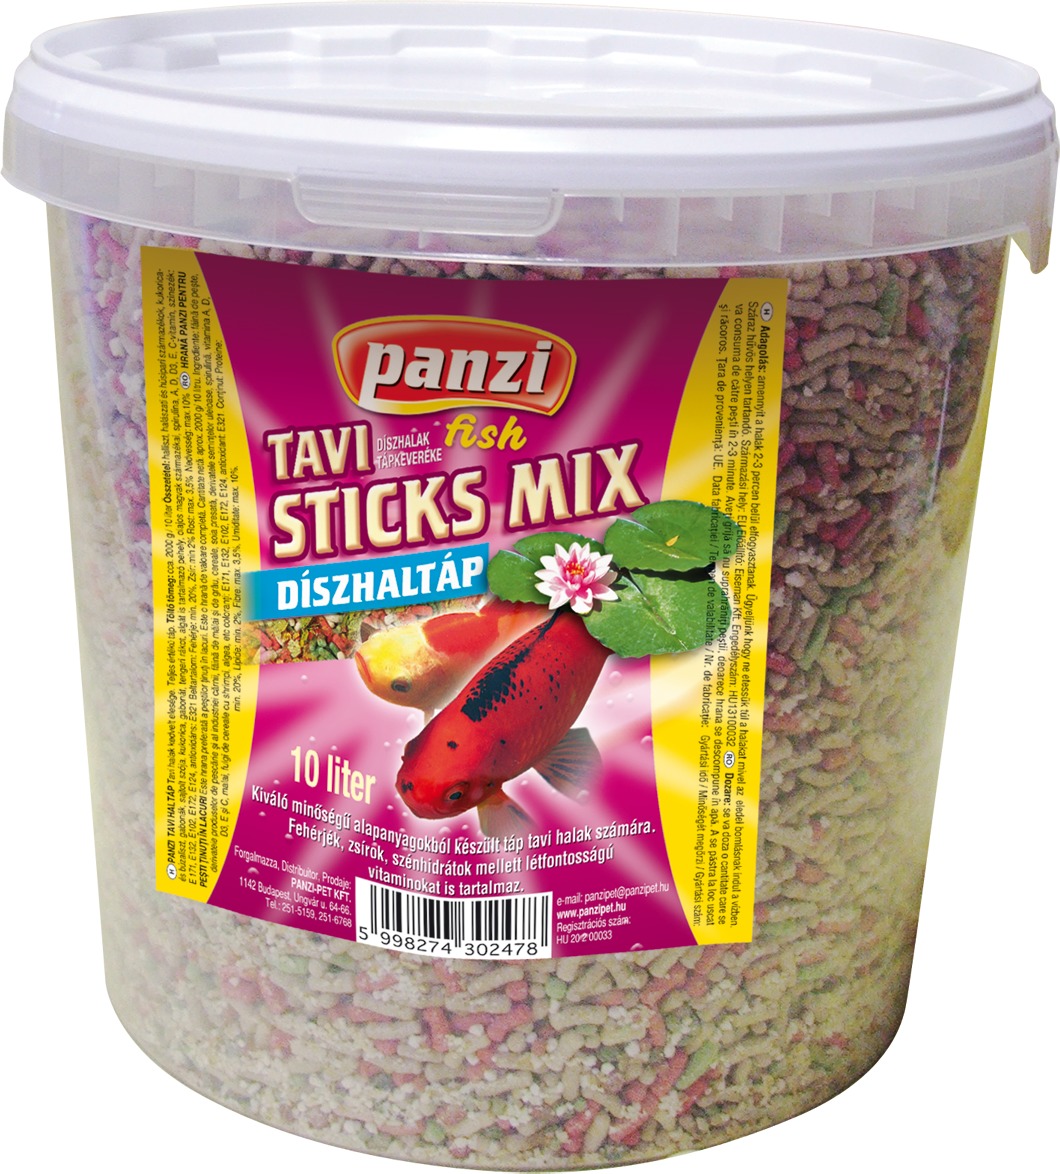 Panzi Sticks-Mix hrană pentru pești de iaz